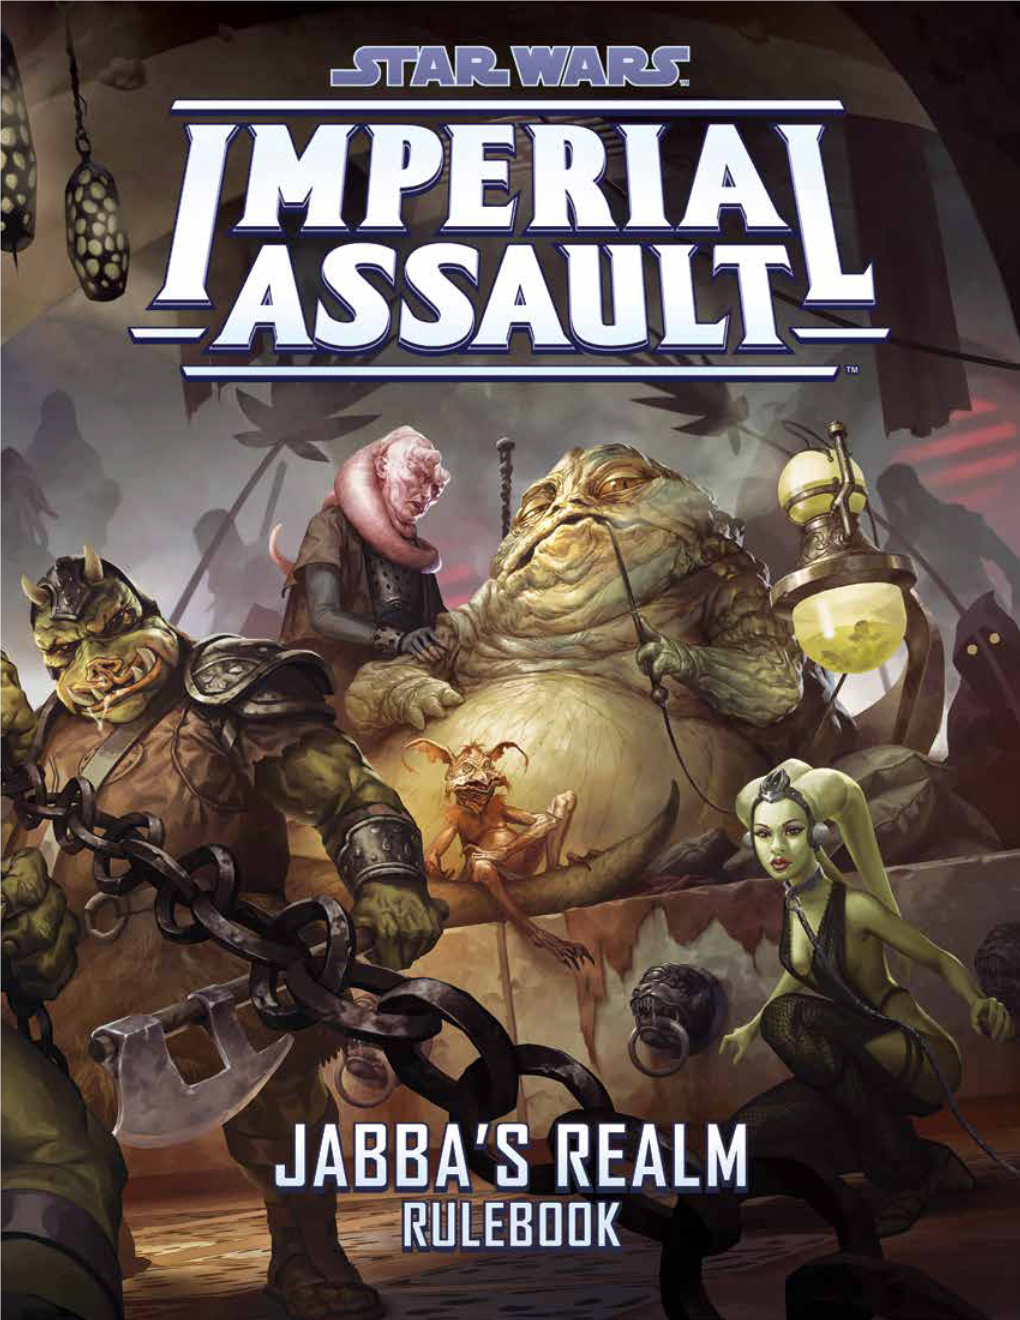 The Jabba's Realm Campaign